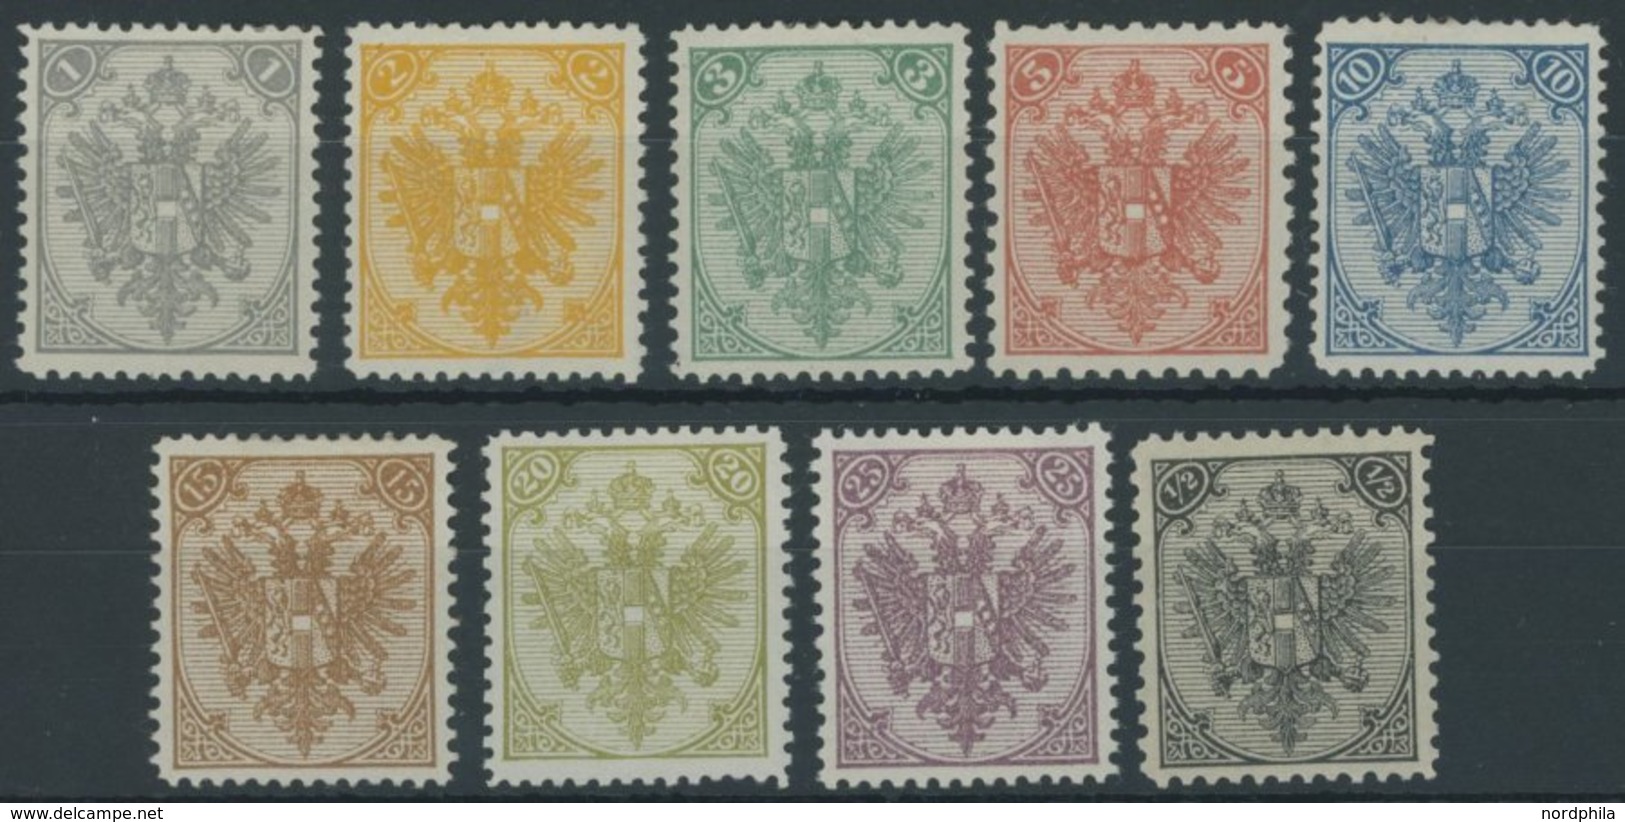 BOSNIEN UND HERZEGOWINA 1-9II *,** , 1895, Buchdruck, Prachtsatz - Bosnia Herzegovina